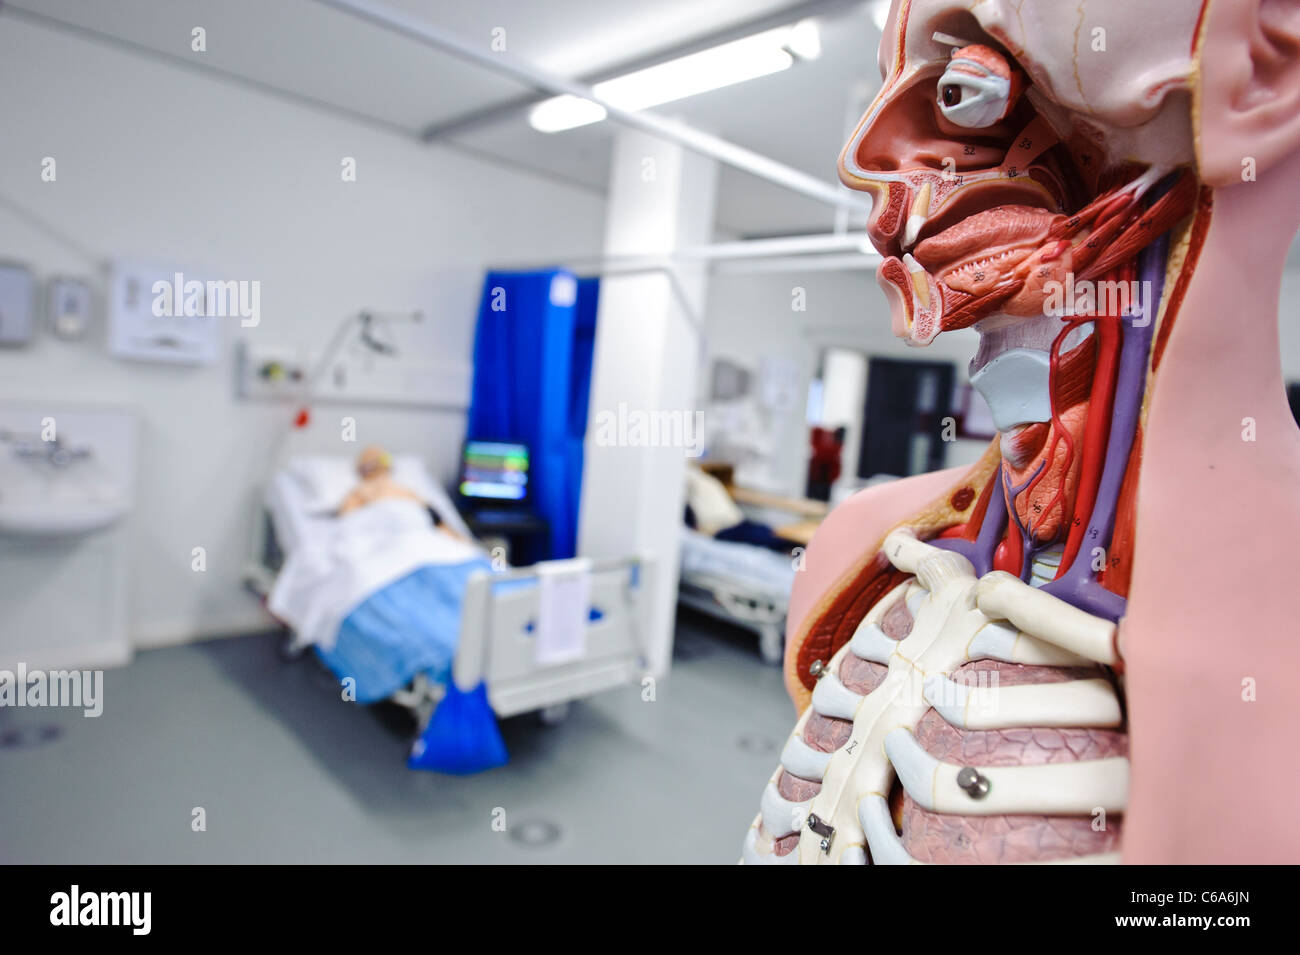 menschliche Anatomie anatomische Modell Ward Einstellung klinischen Fertigkeiten Lab dummy Krankenhauspatient im Bett Stockfoto